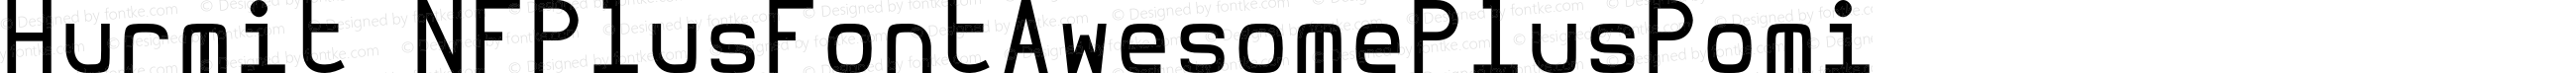 Hurmit Medium Nerd Font Plus Font Awesome Plus Pomicons Mono Windows Compatible